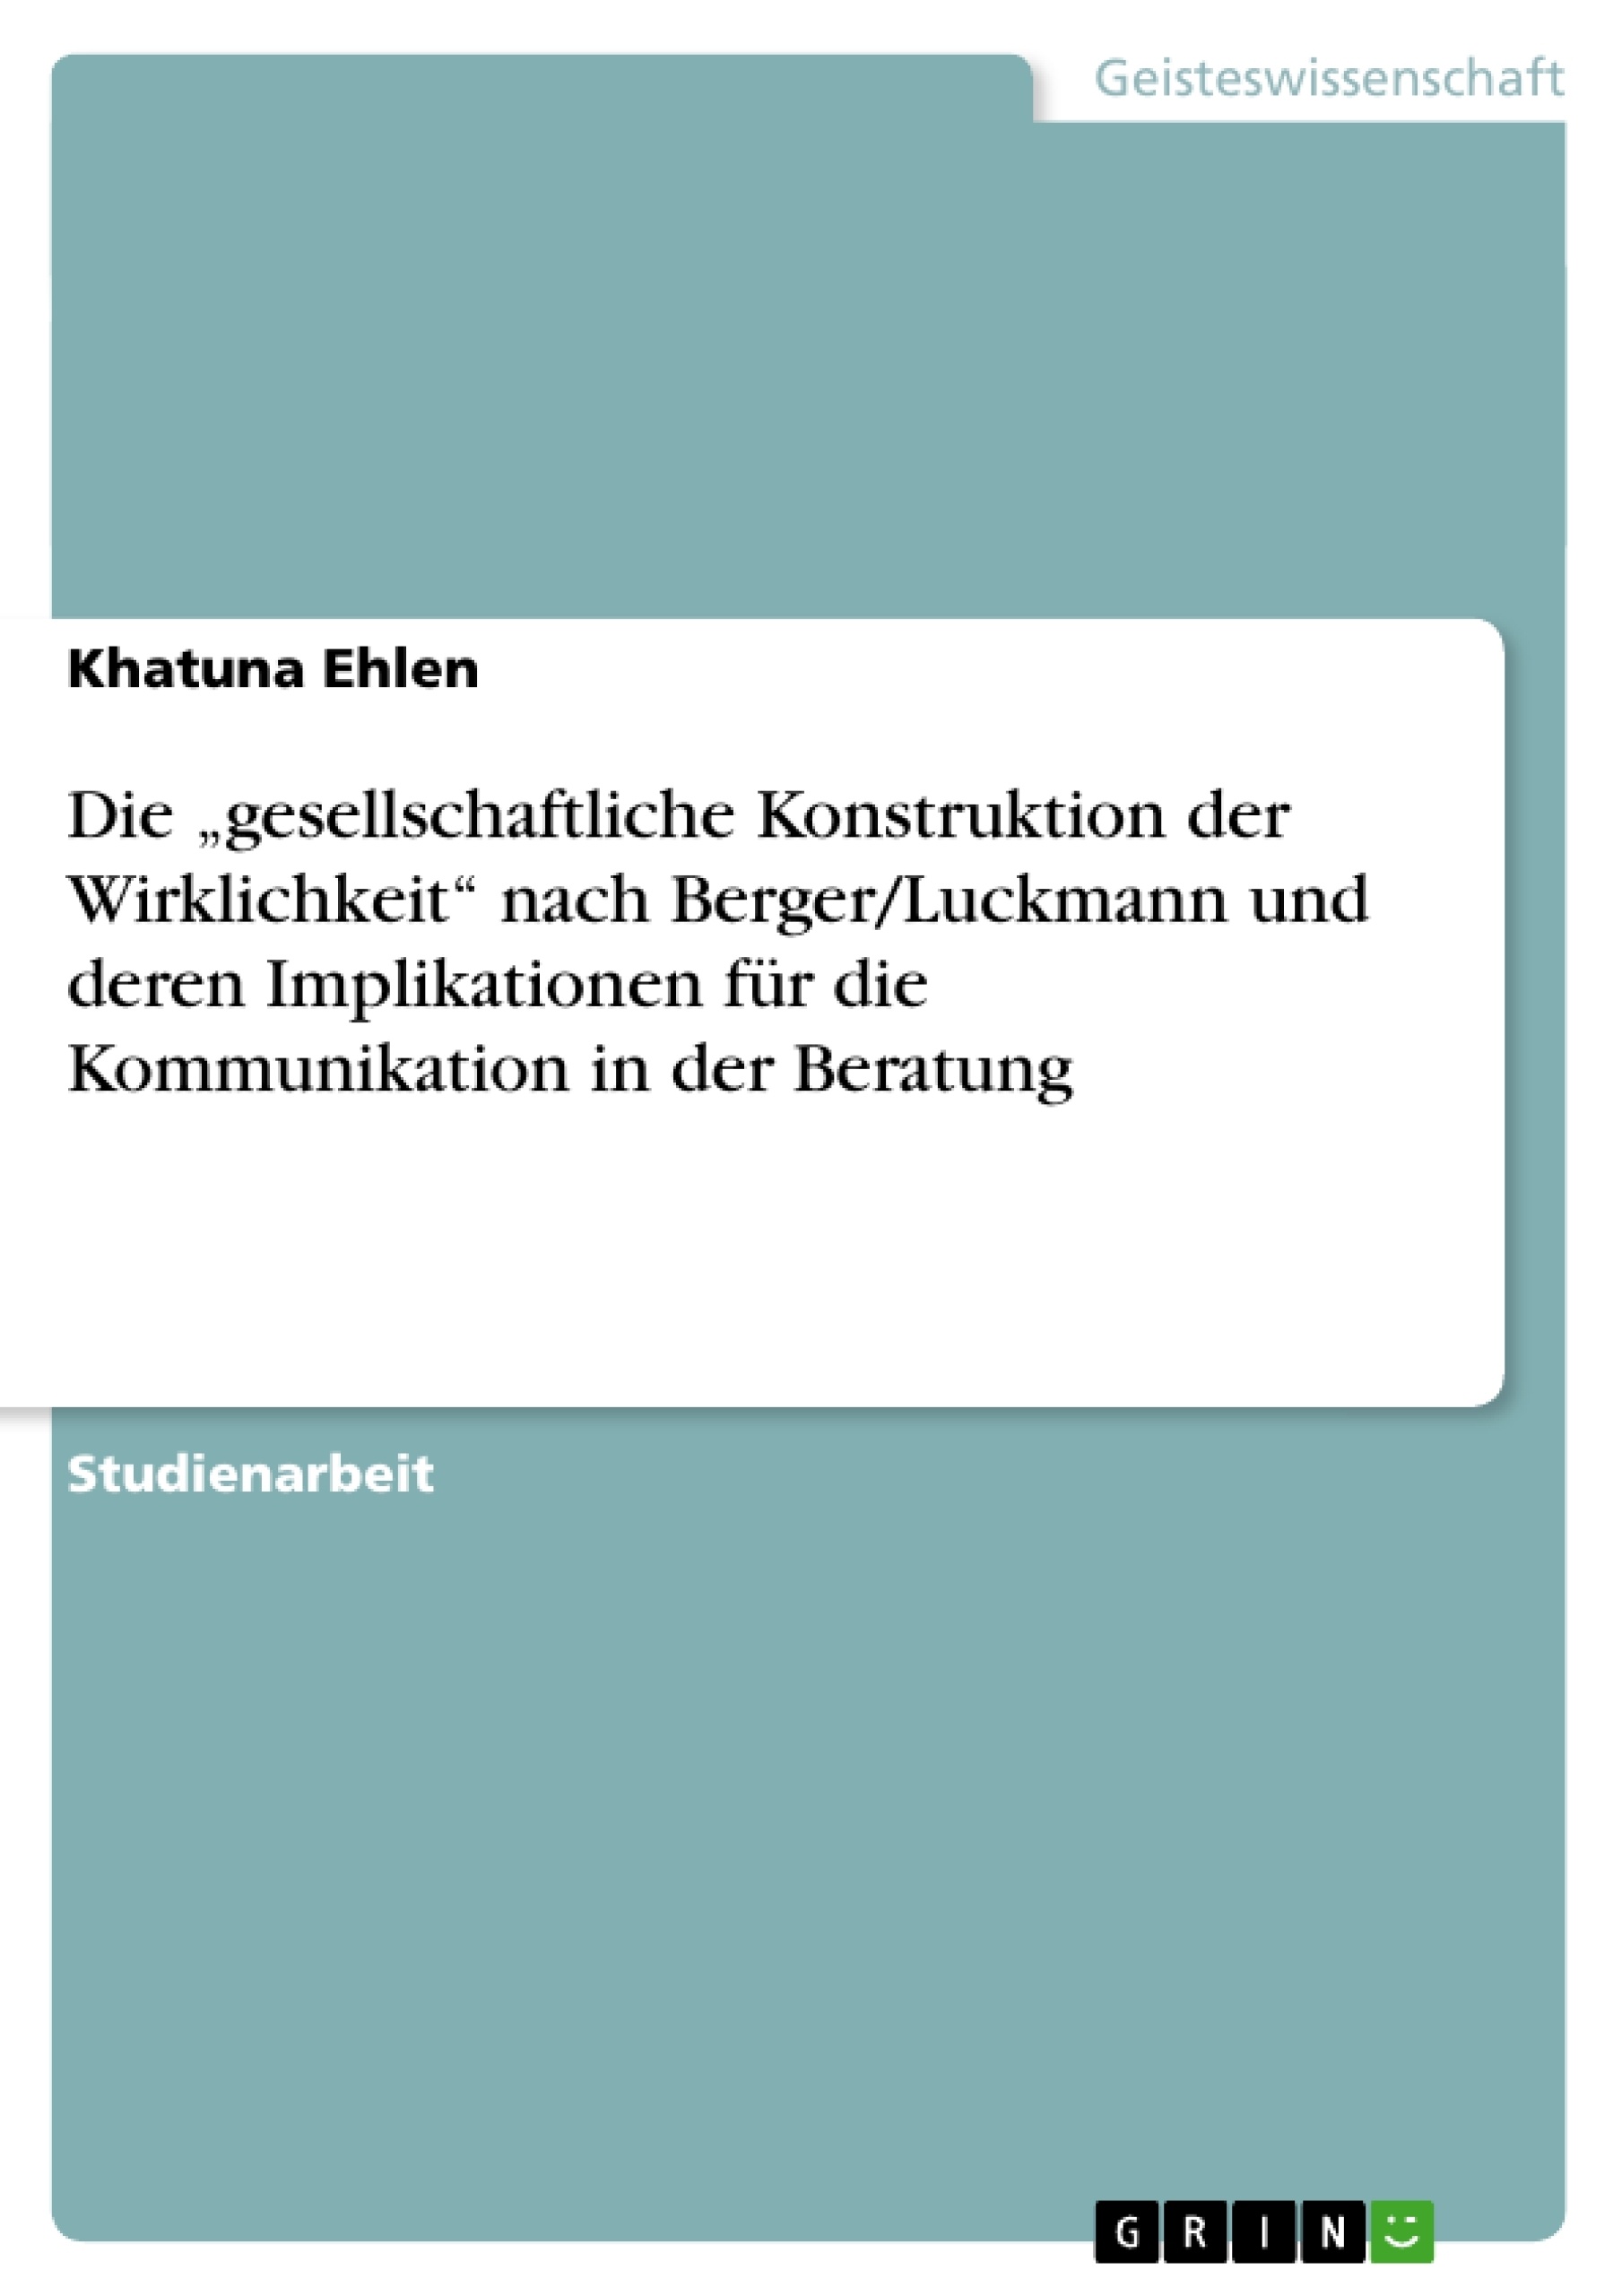 Title: Die „gesellschaftliche Konstruktion der Wirklichkeit“  nach Berger/Luckmann und deren Implikationen für die Kommunikation in der Beratung